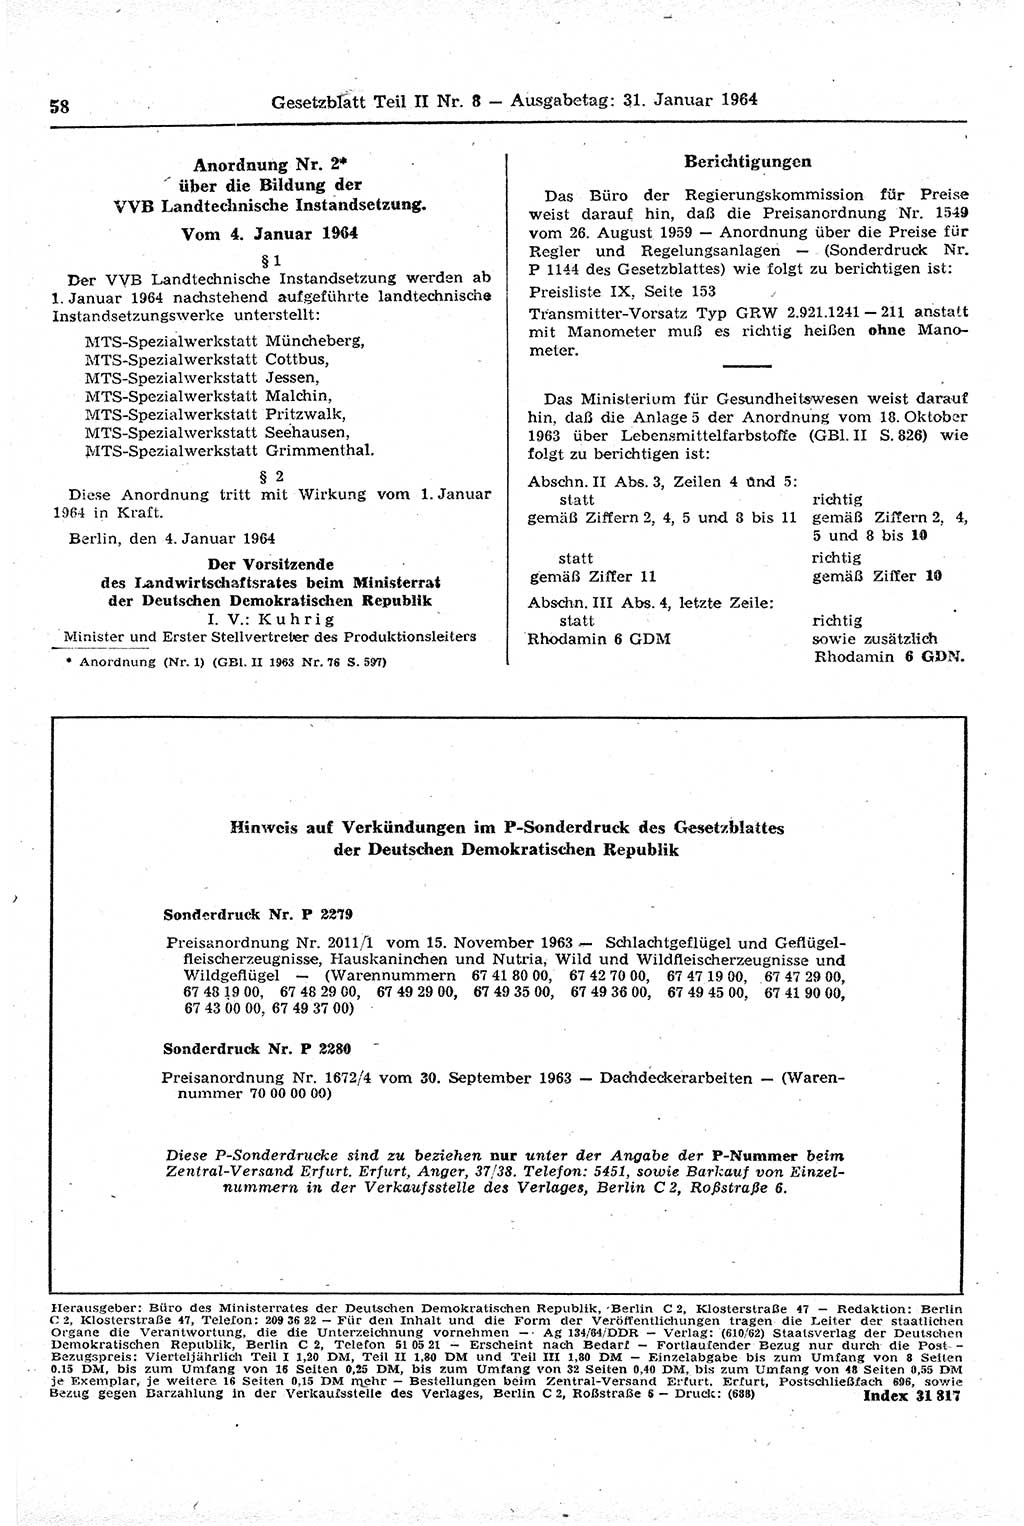 Gesetzblatt (GBl.) der Deutschen Demokratischen Republik (DDR) Teil ⅠⅠ 1964, Seite 58 (GBl. DDR ⅠⅠ 1964, S. 58)